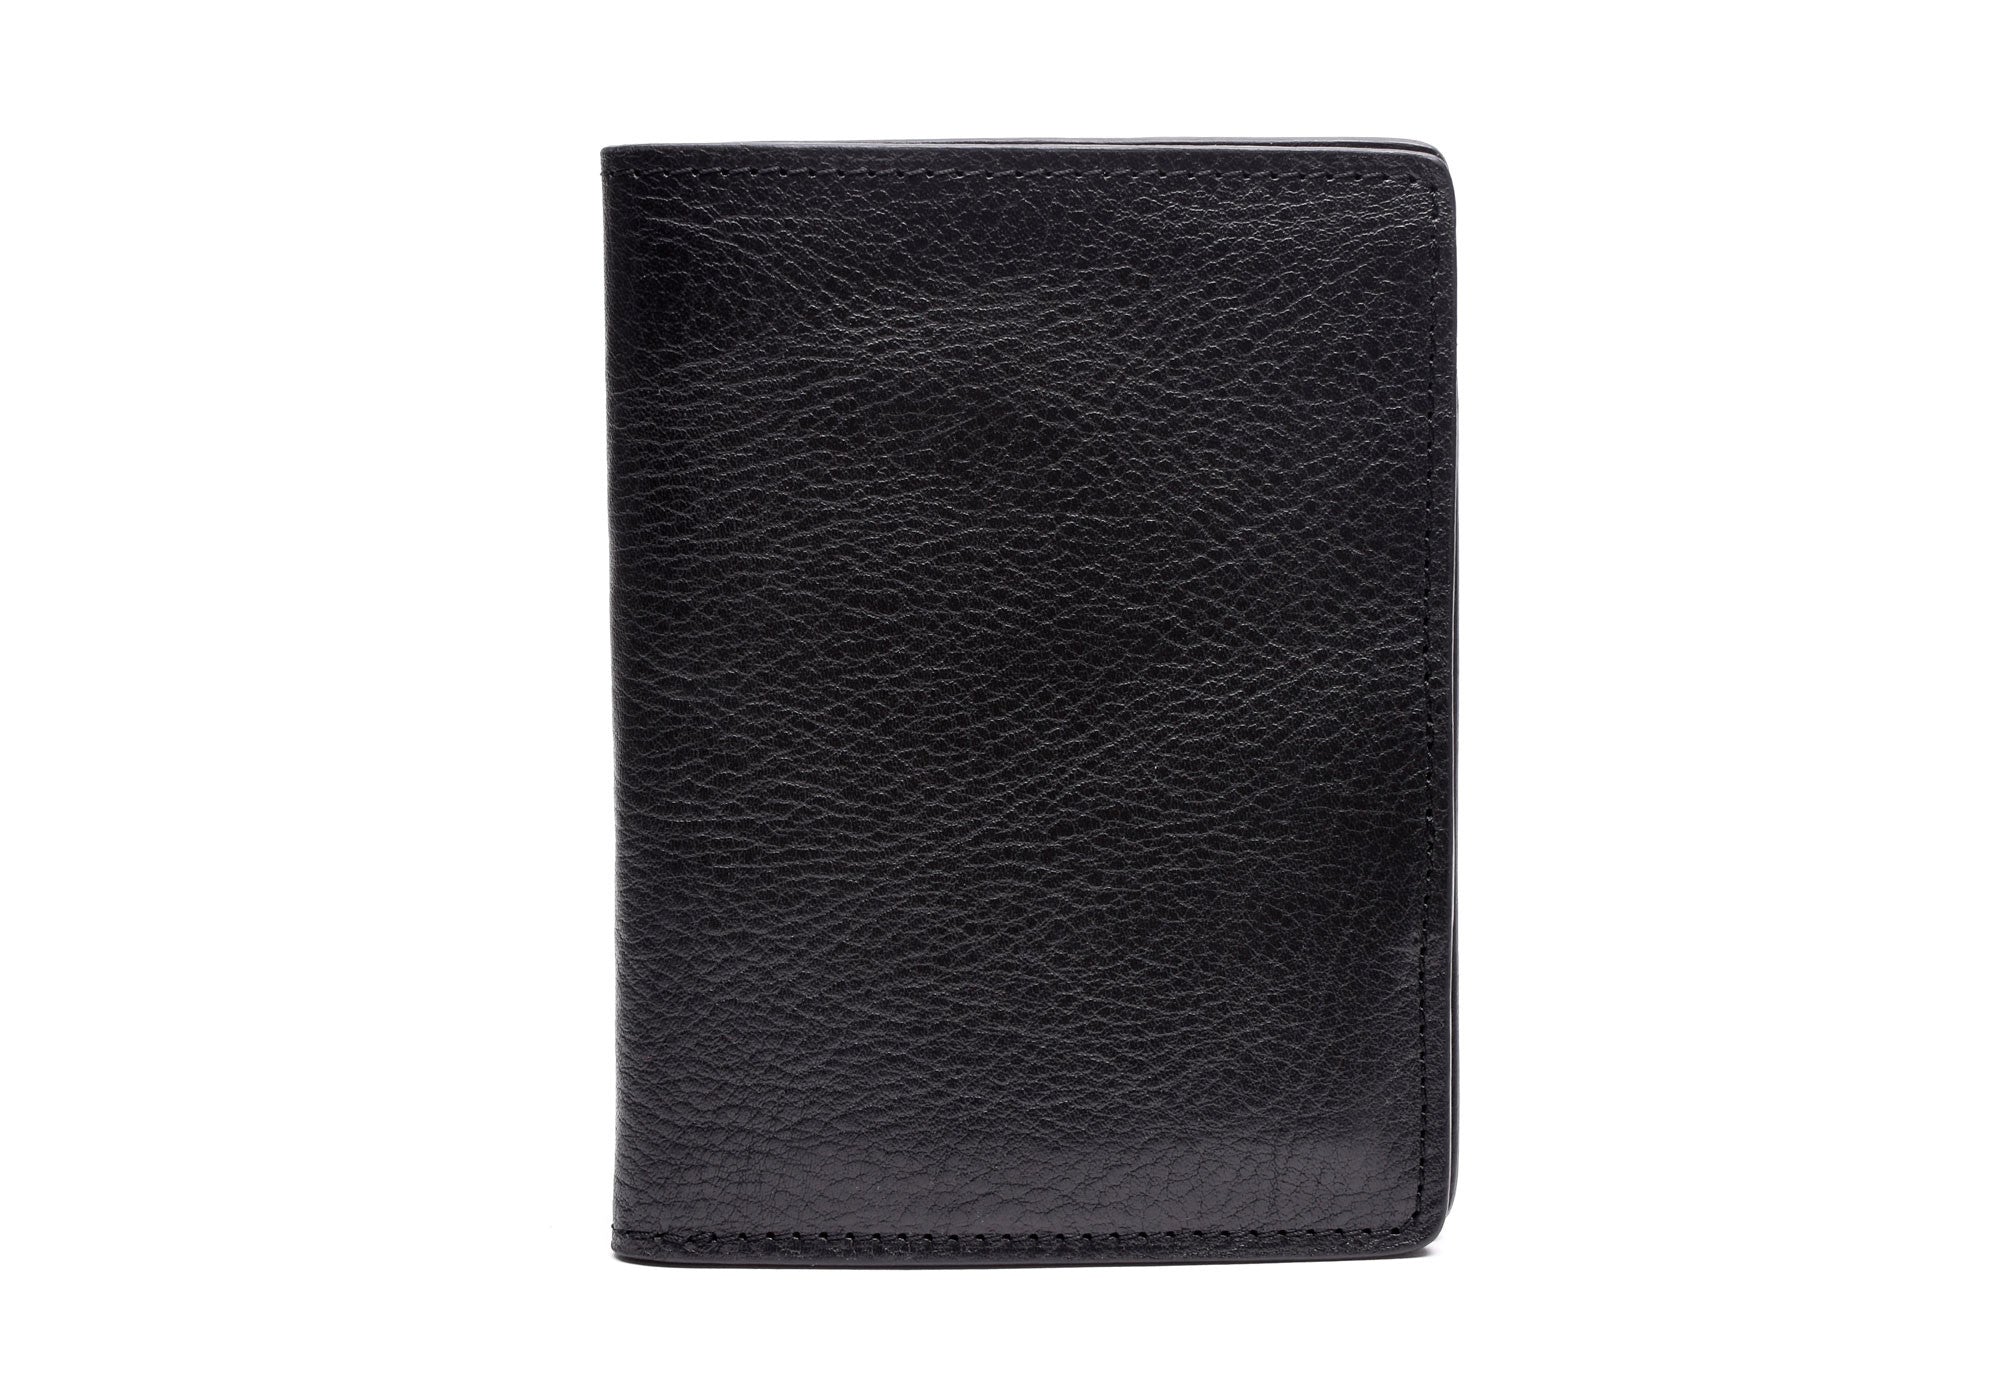 Designer Vegetable Tanned Leather Passport Cover Holder Black 